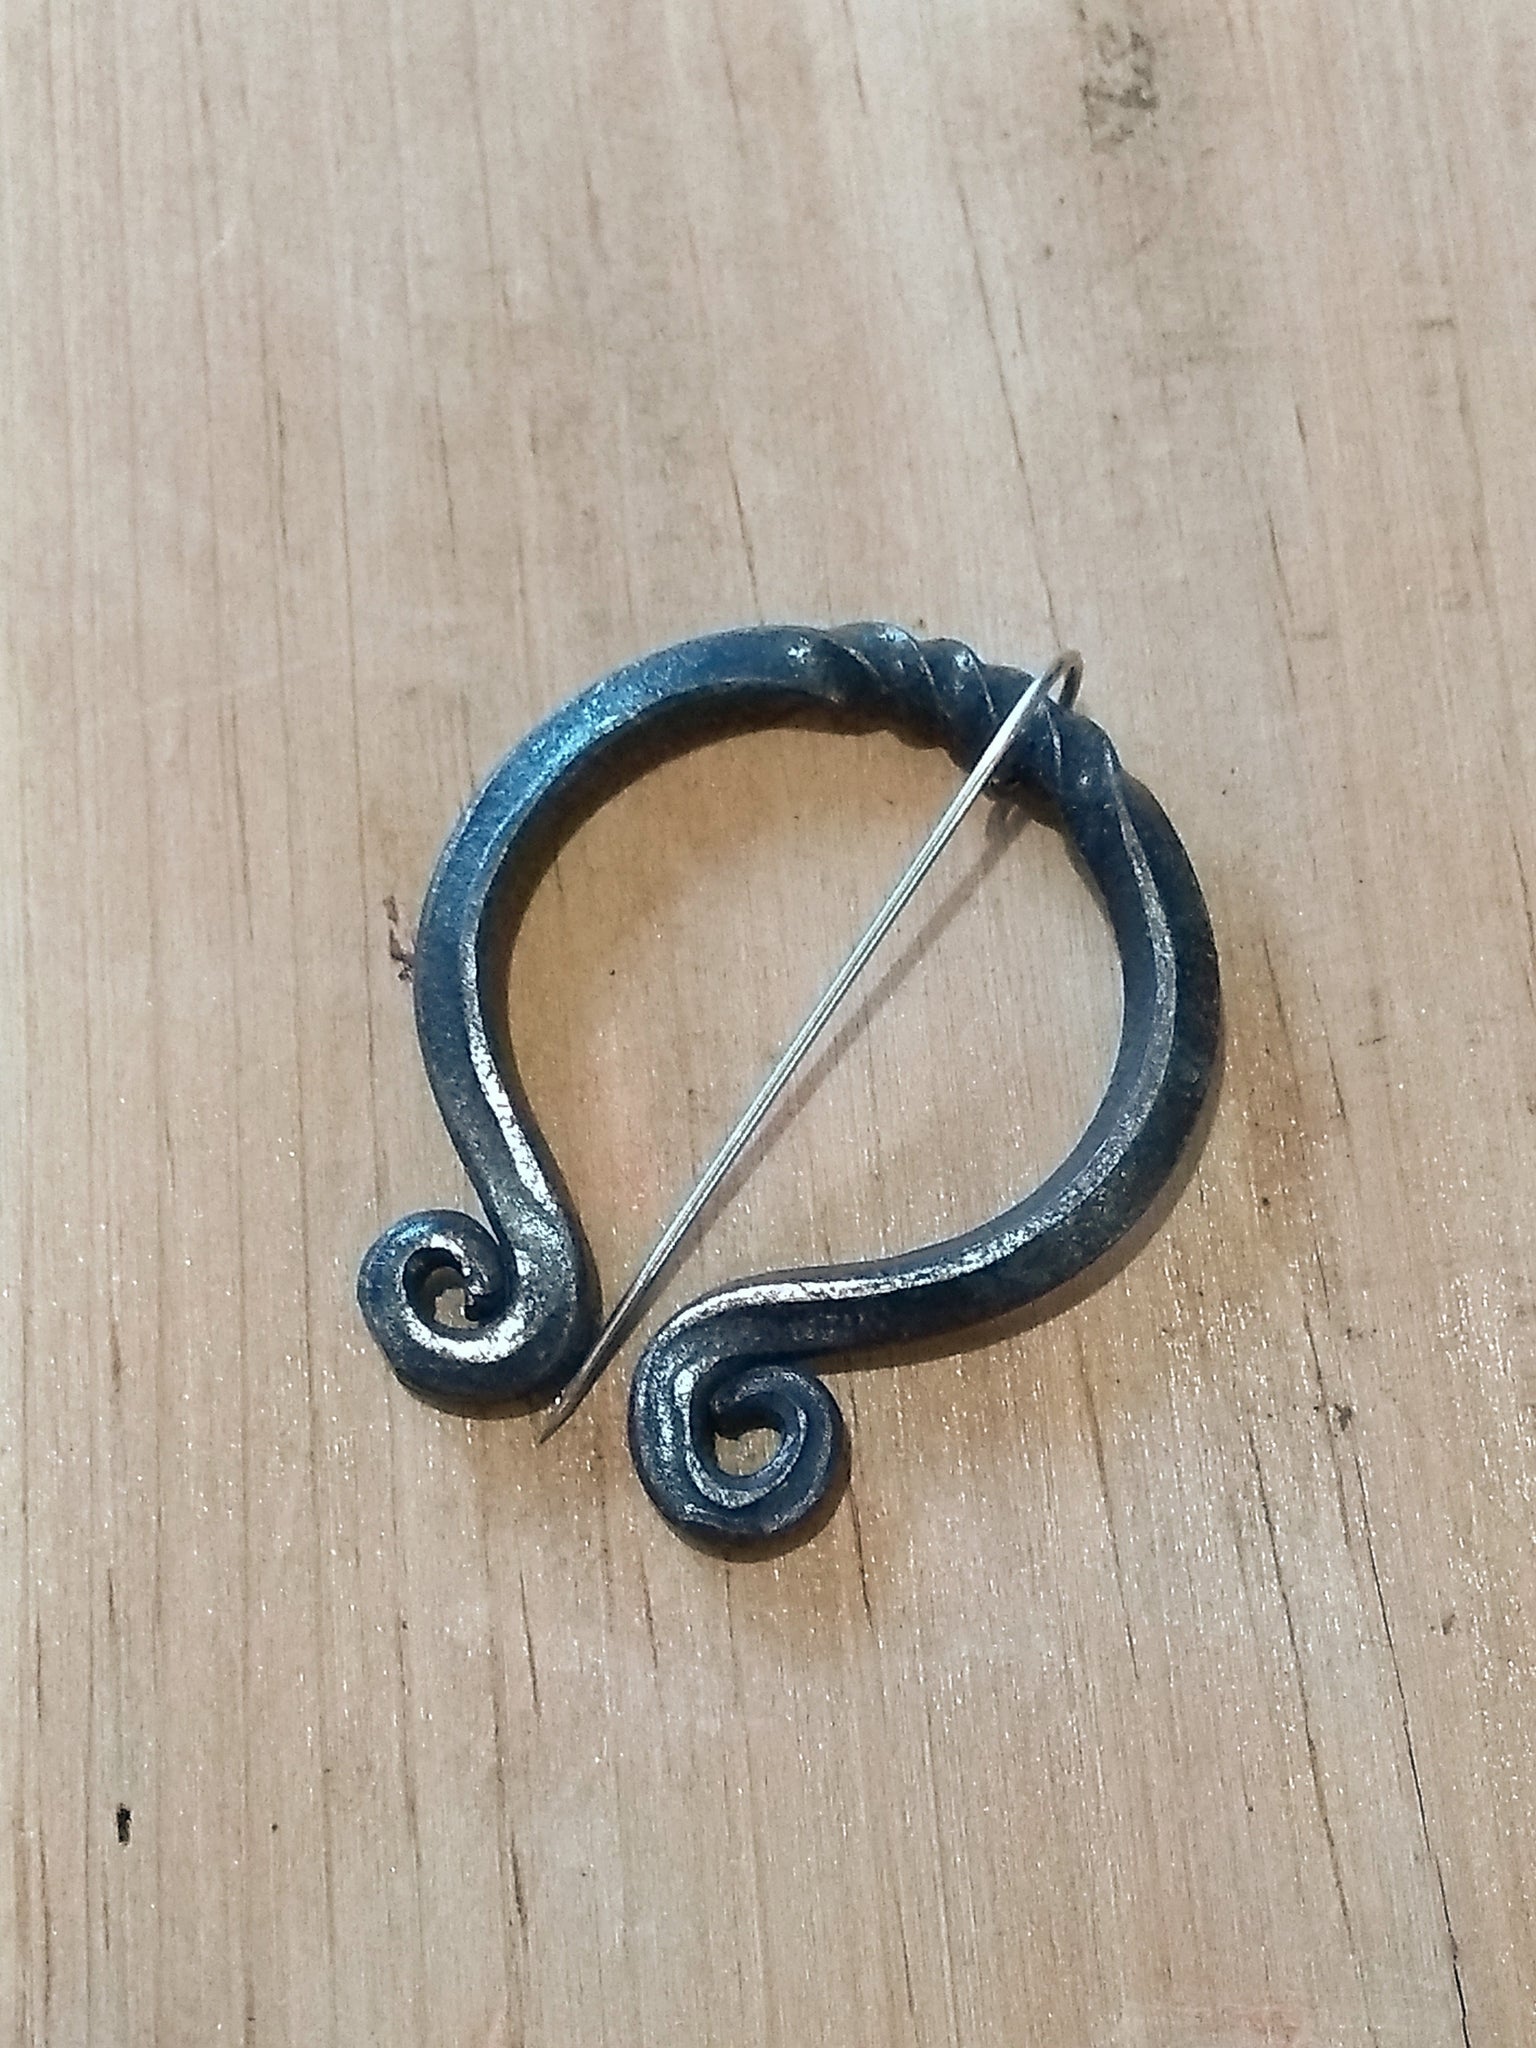 Forged Fibula Viking Cloak Pin Nordic Brooch of Ancient Times Penannular  Viking Brooch Clothes Pins